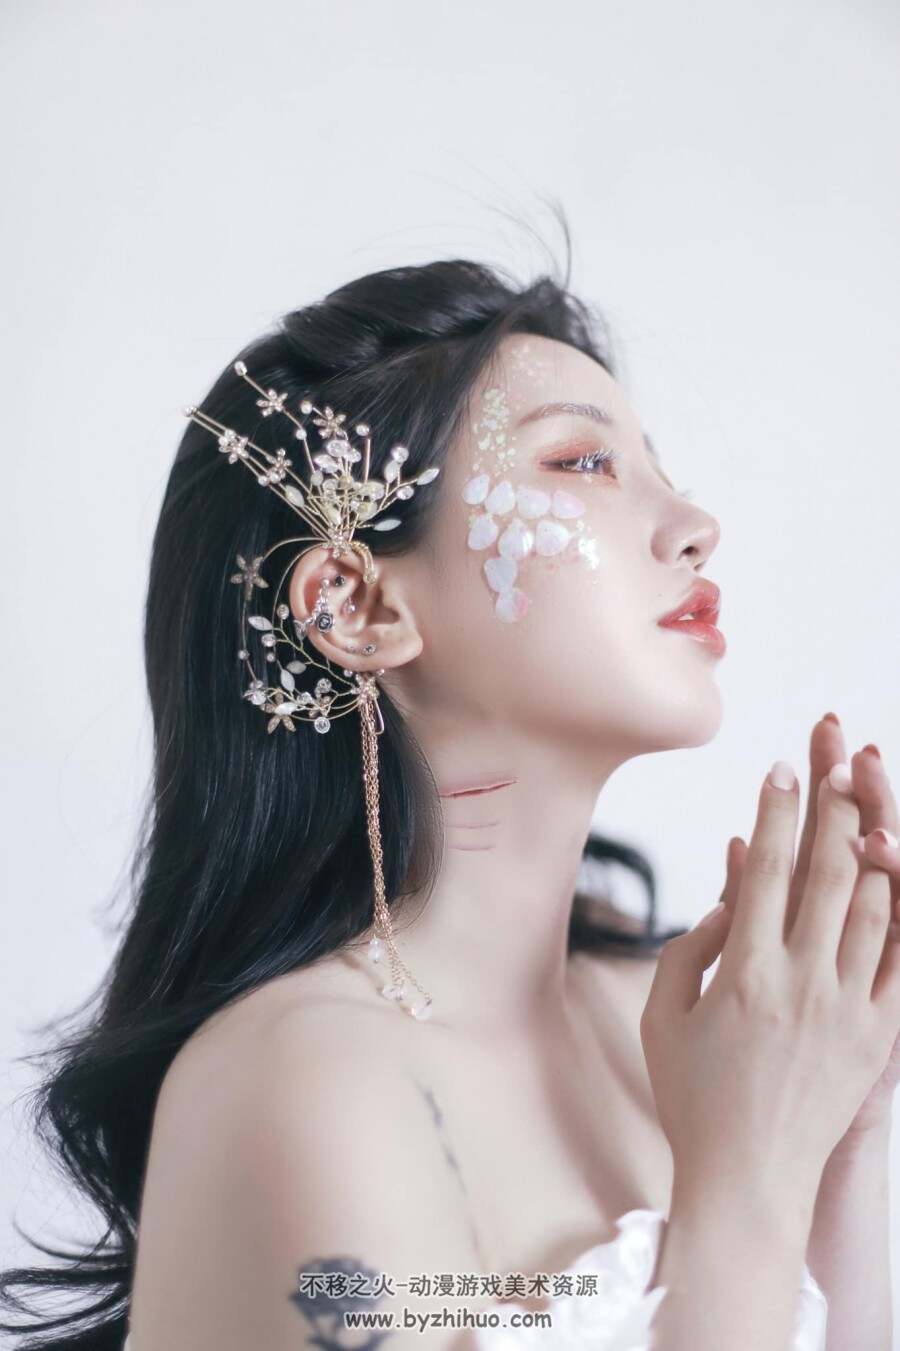 韩国model-Naughty Rabbit「厌世女孩」妆容、服装、动作素材分享 微云下载